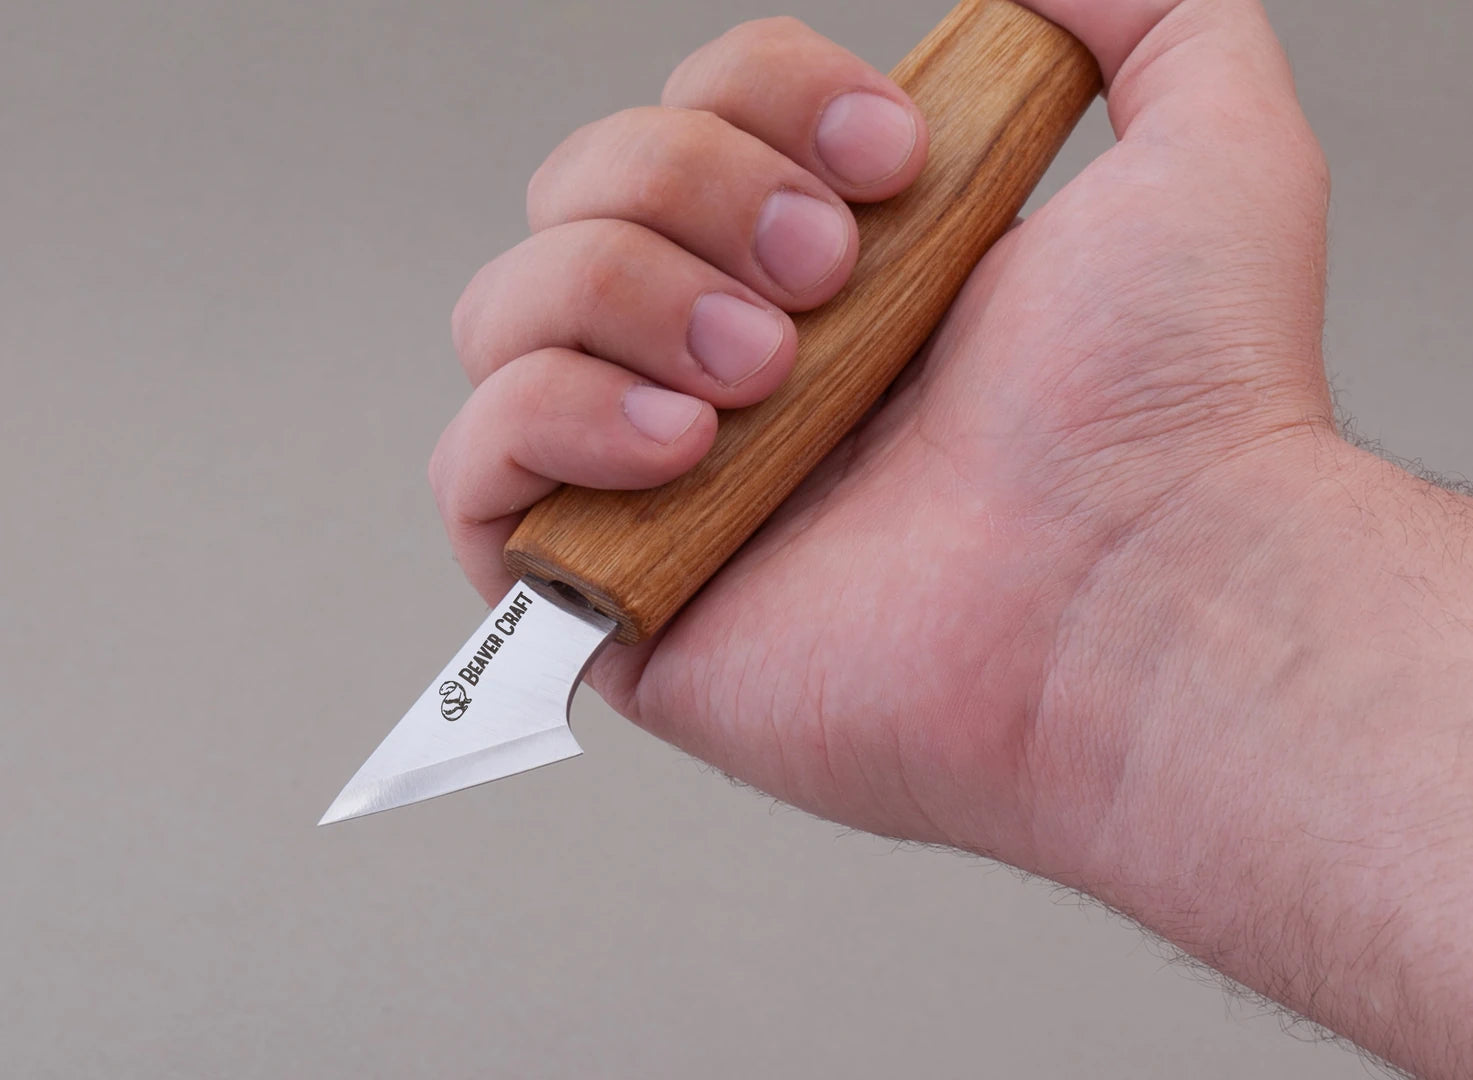 Buy knife for geometric whittling online - BeaverCraft